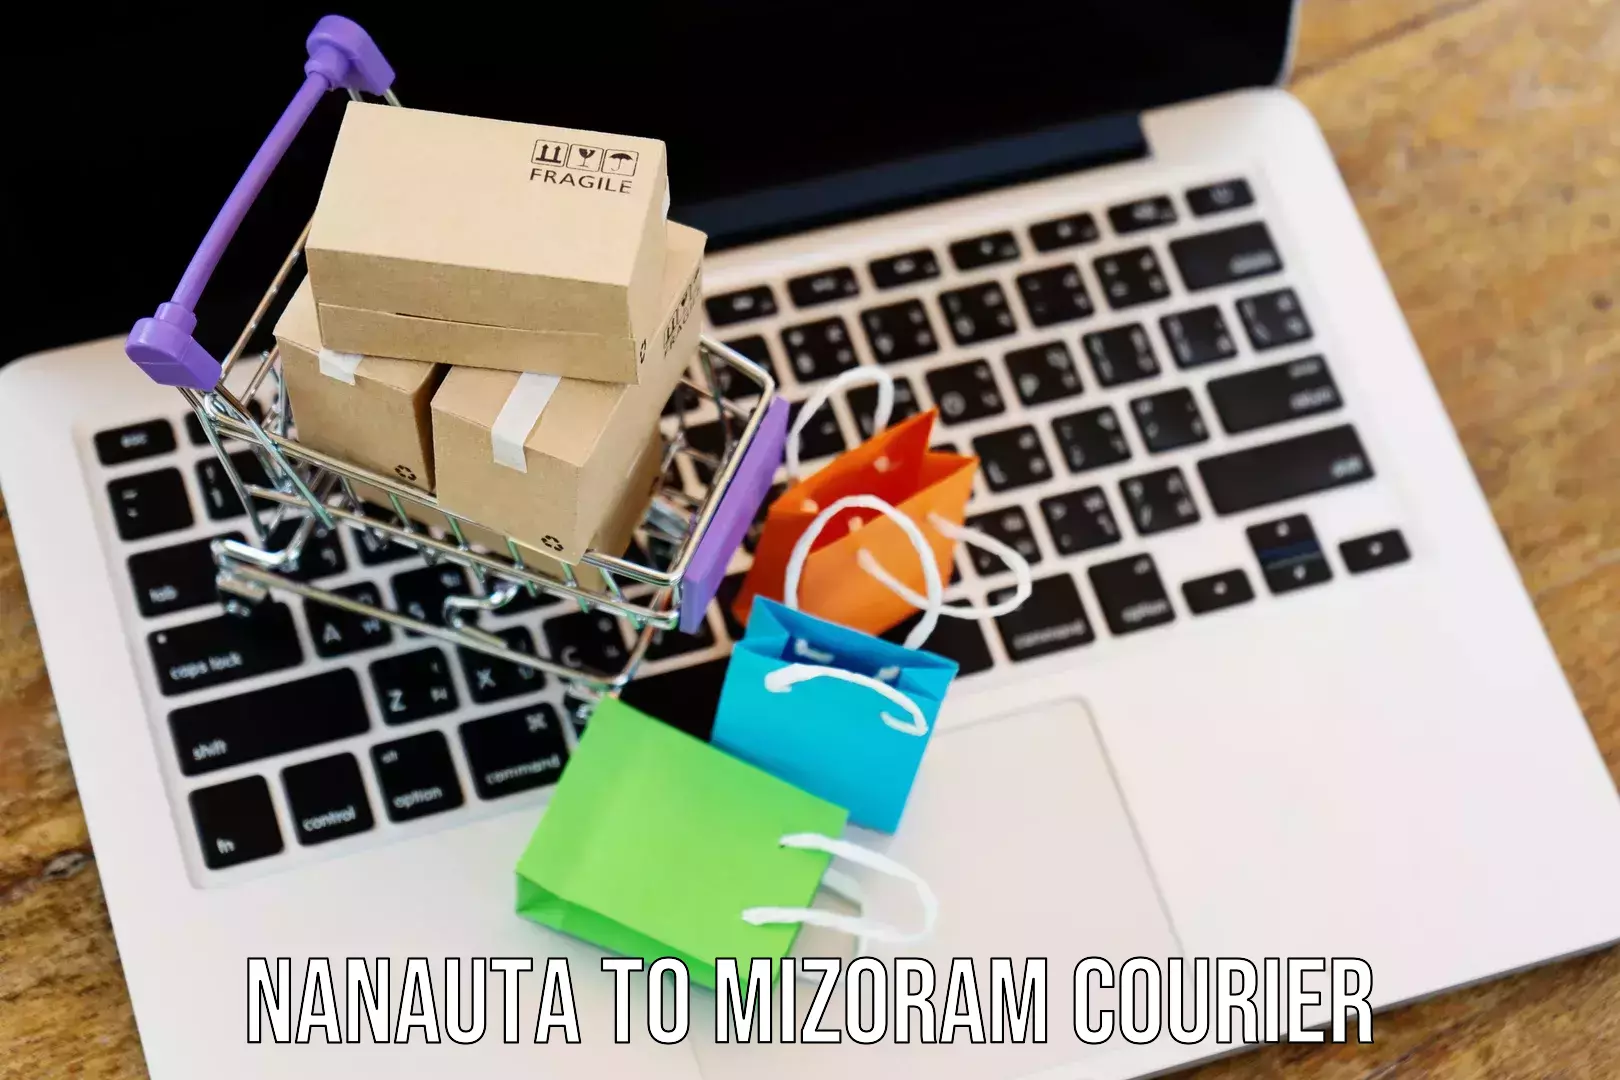 Smart shipping technology Nanauta to Mizoram